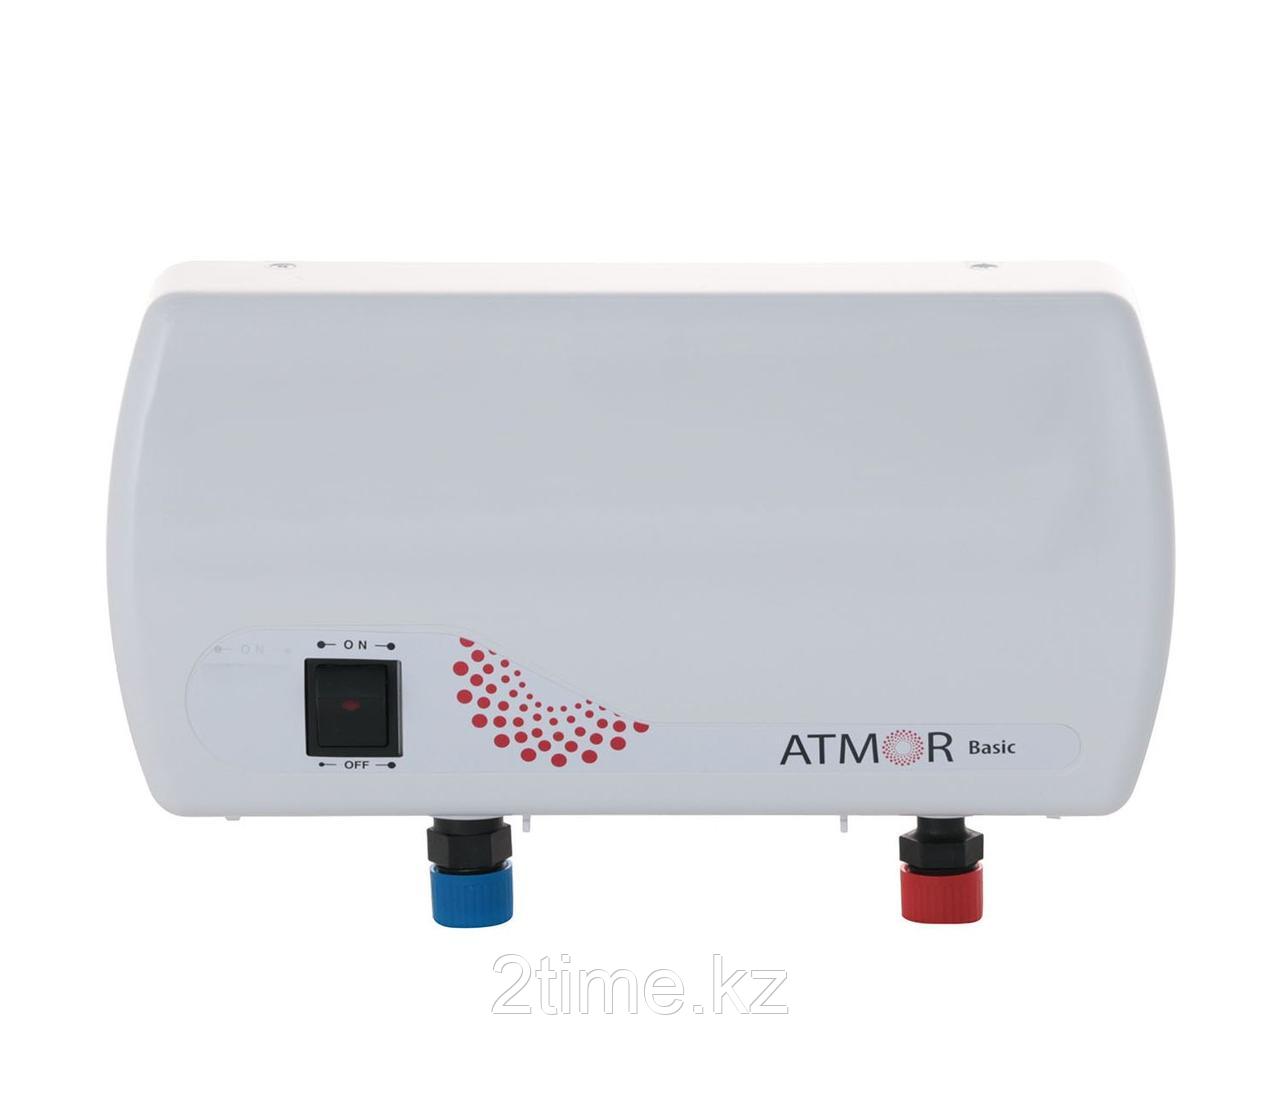 Электрический проточный водонагреватель ATMOR CLASSIC 501 5 KW SHOWER